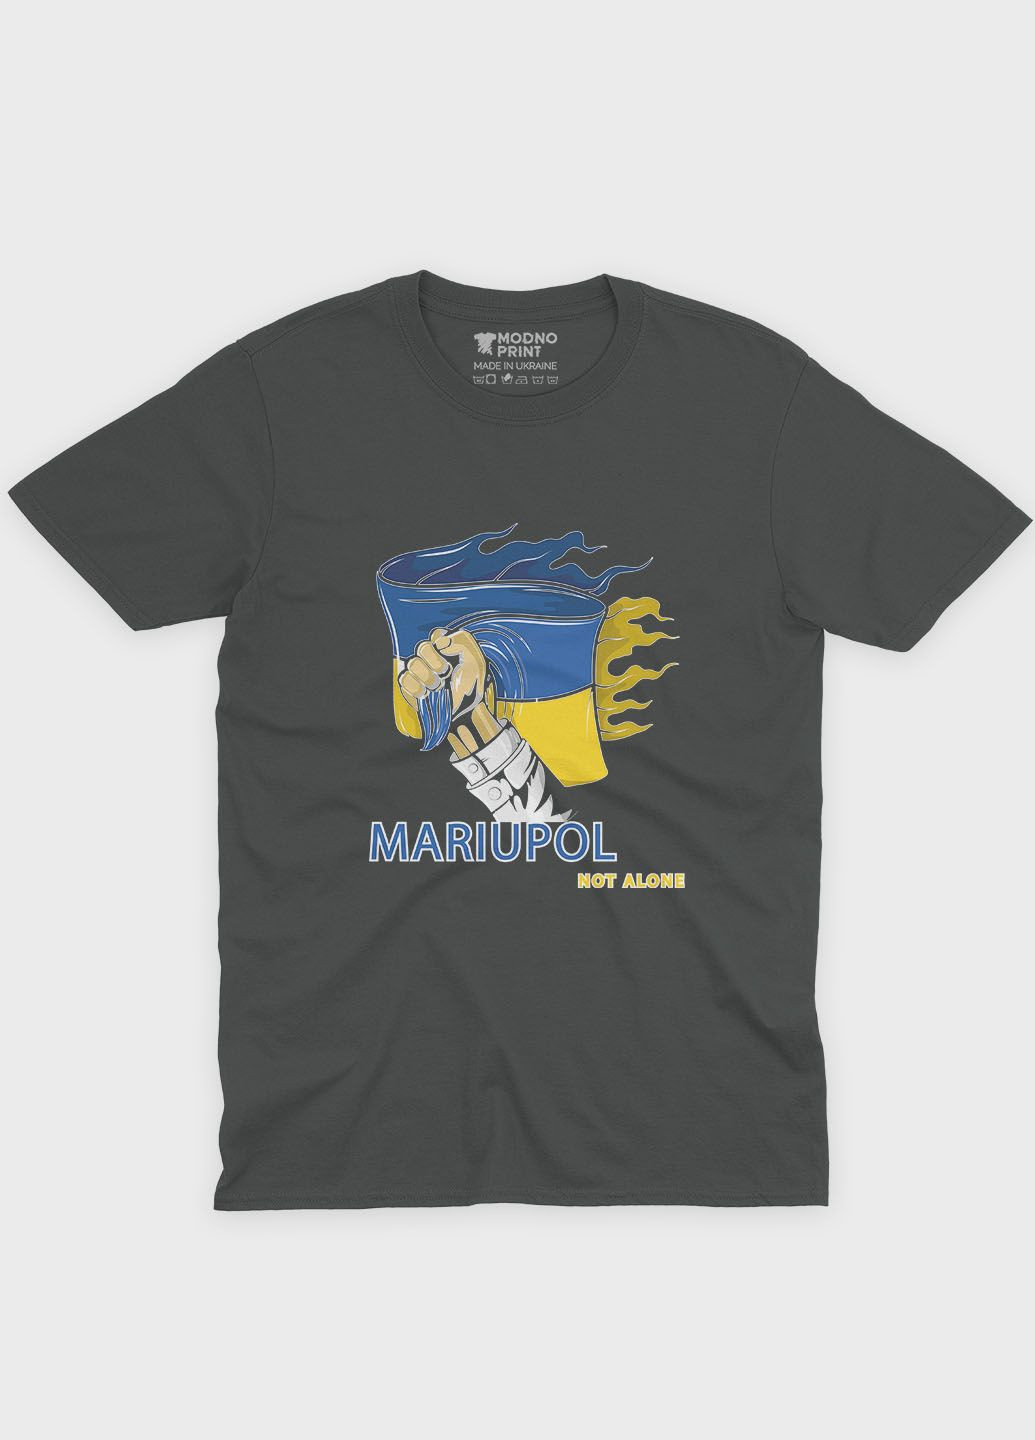 Темно-серая мужская футболка с патриотическим принтом мариуполь (ts001-3-slg-005-1-084) Modno